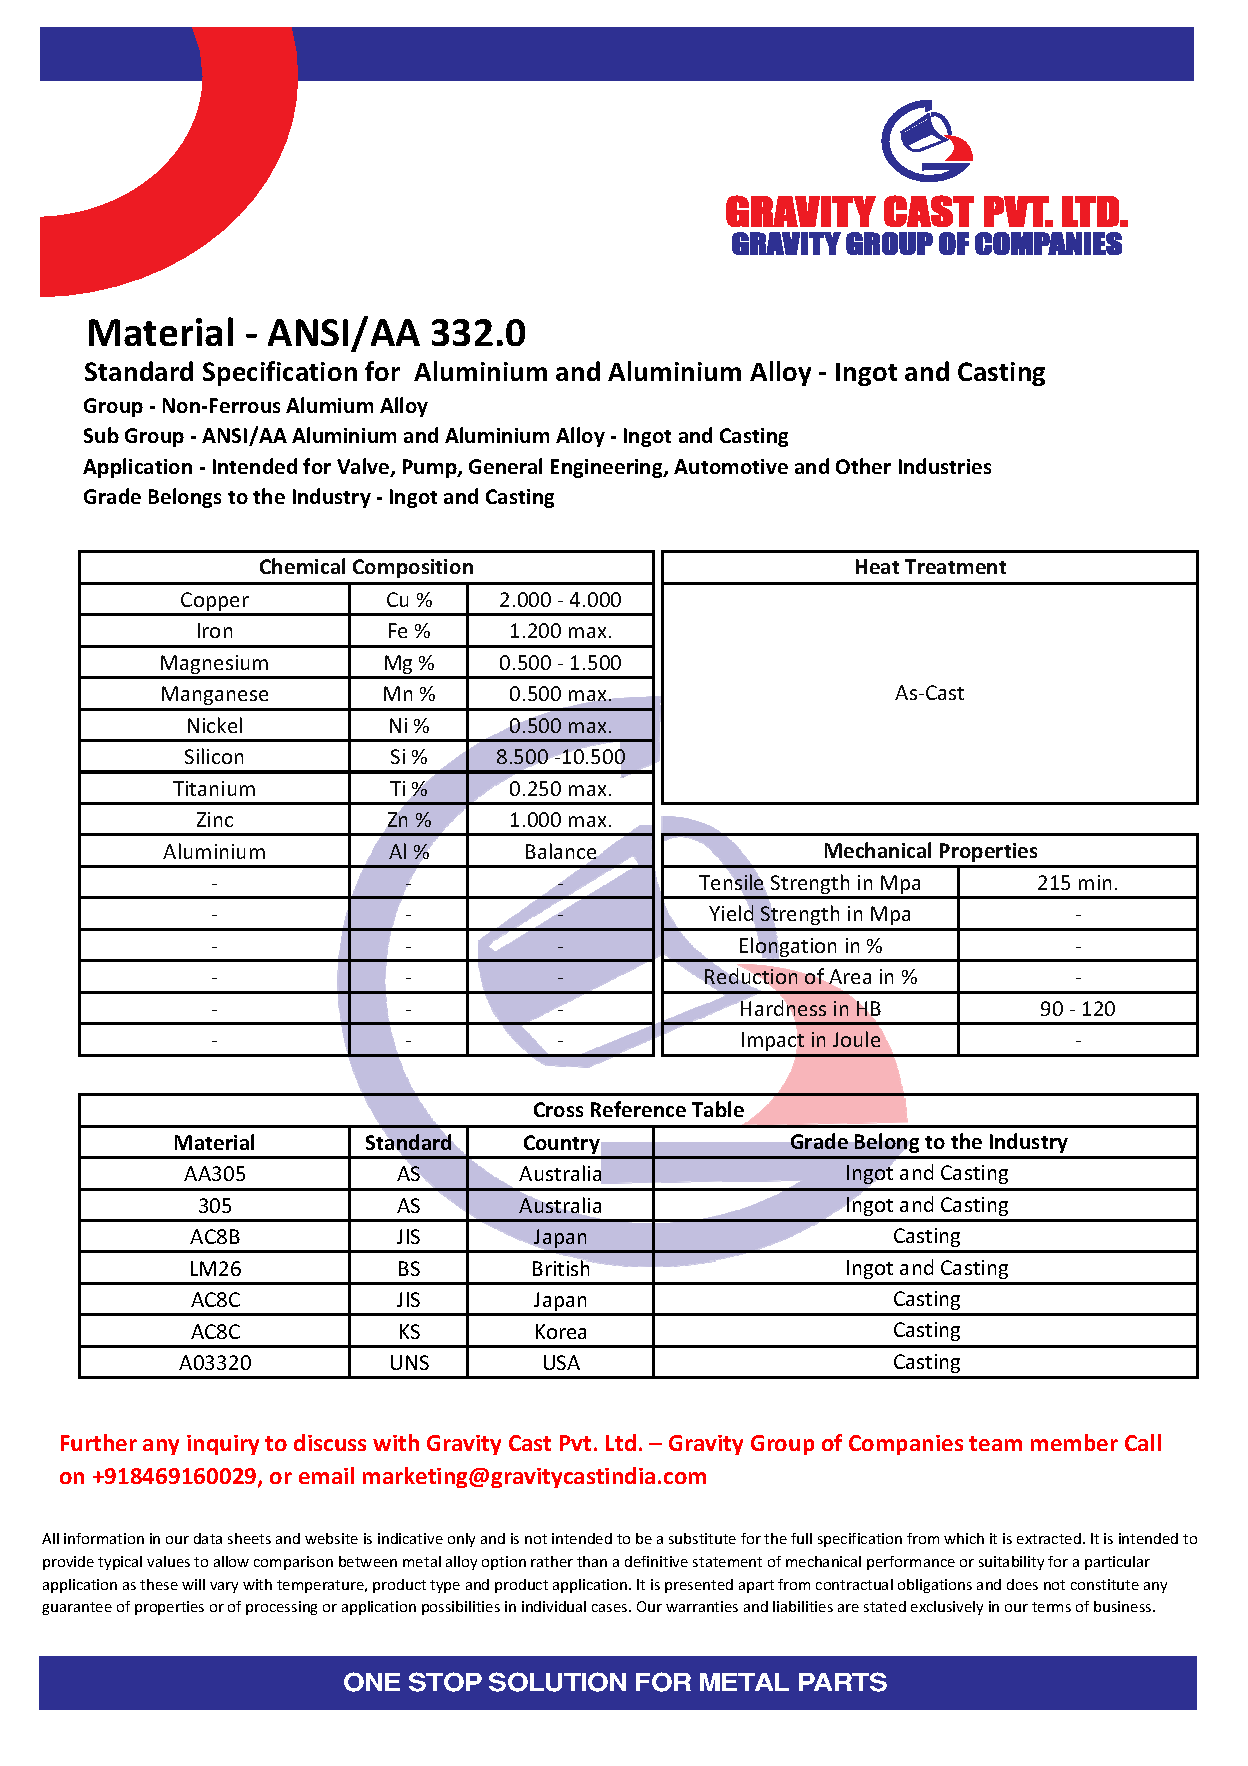 ANSI_AA 332.0.pdf